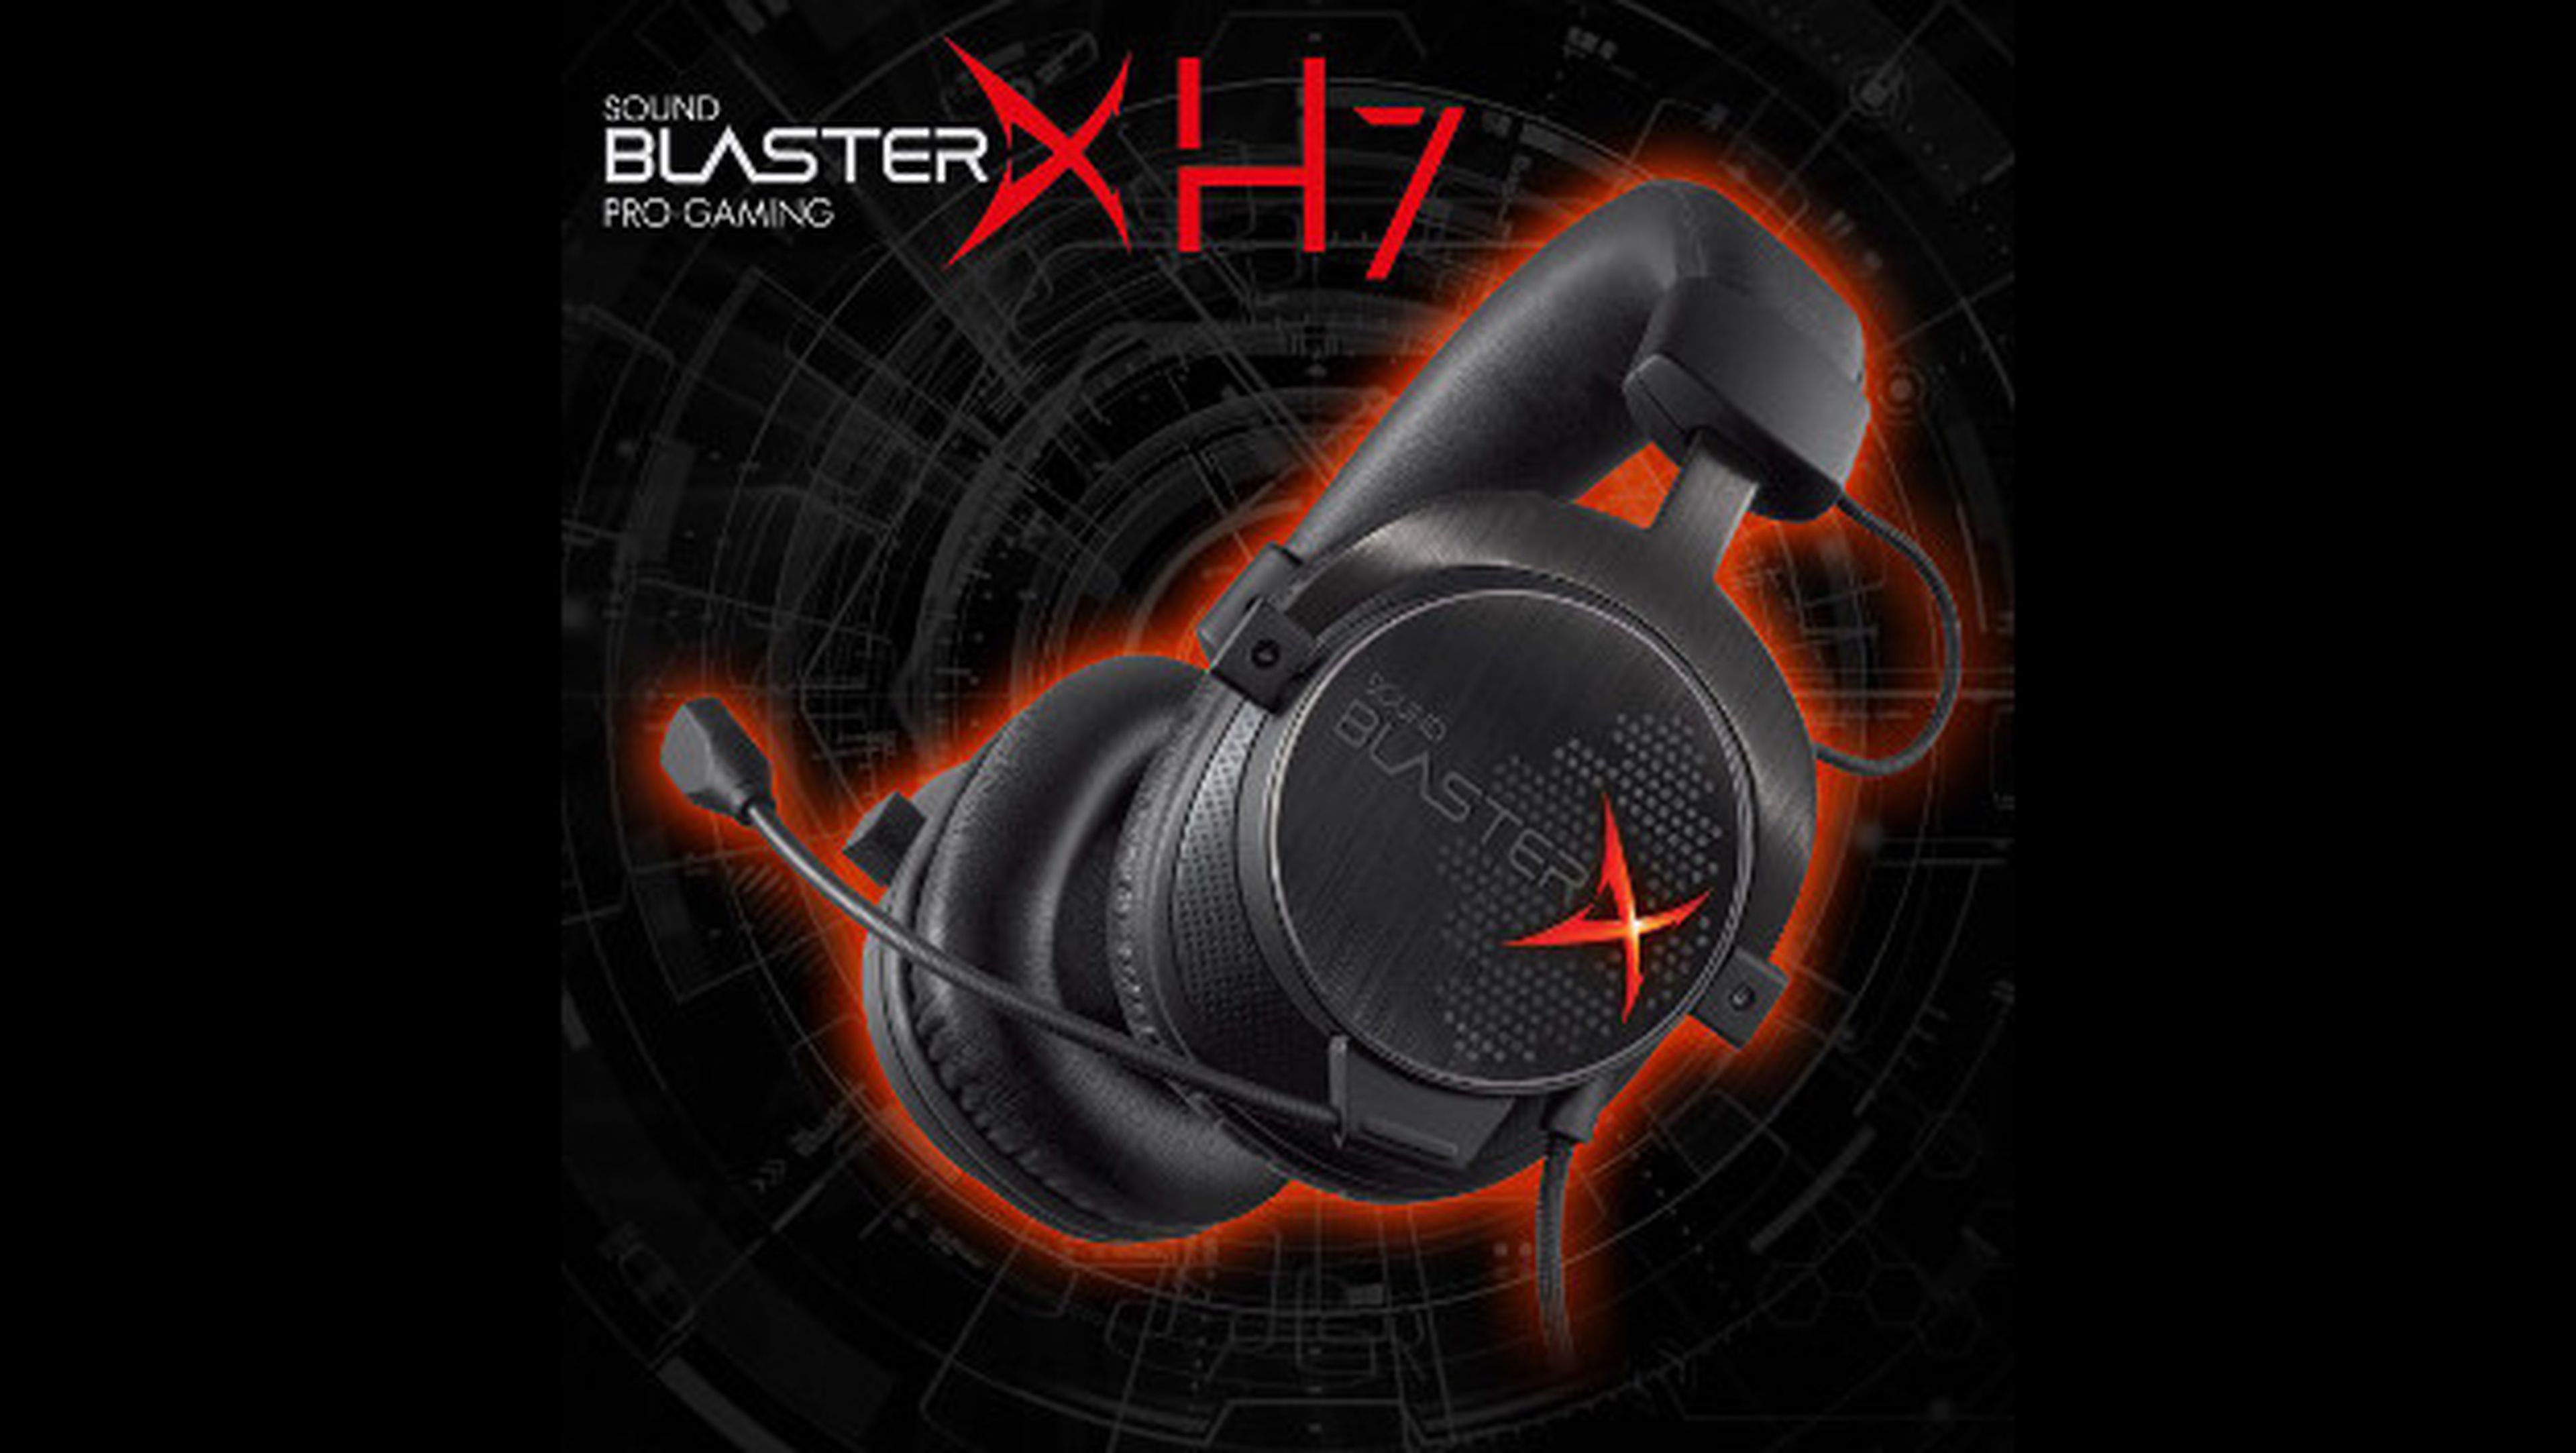 Los Sound BlasterX H7 ofrecen sonido envolvente 7.1 profesional